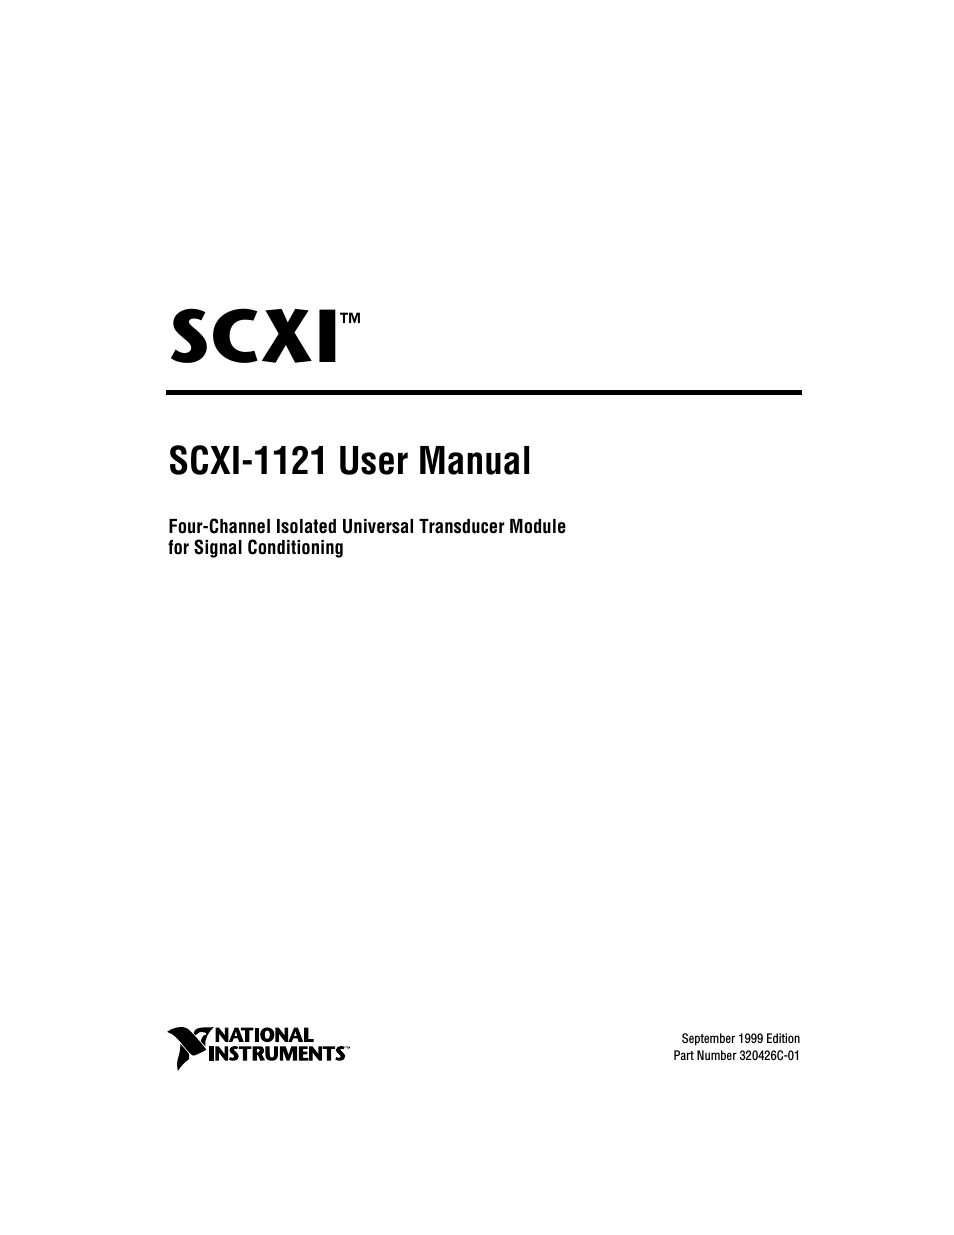 SCXI-1121